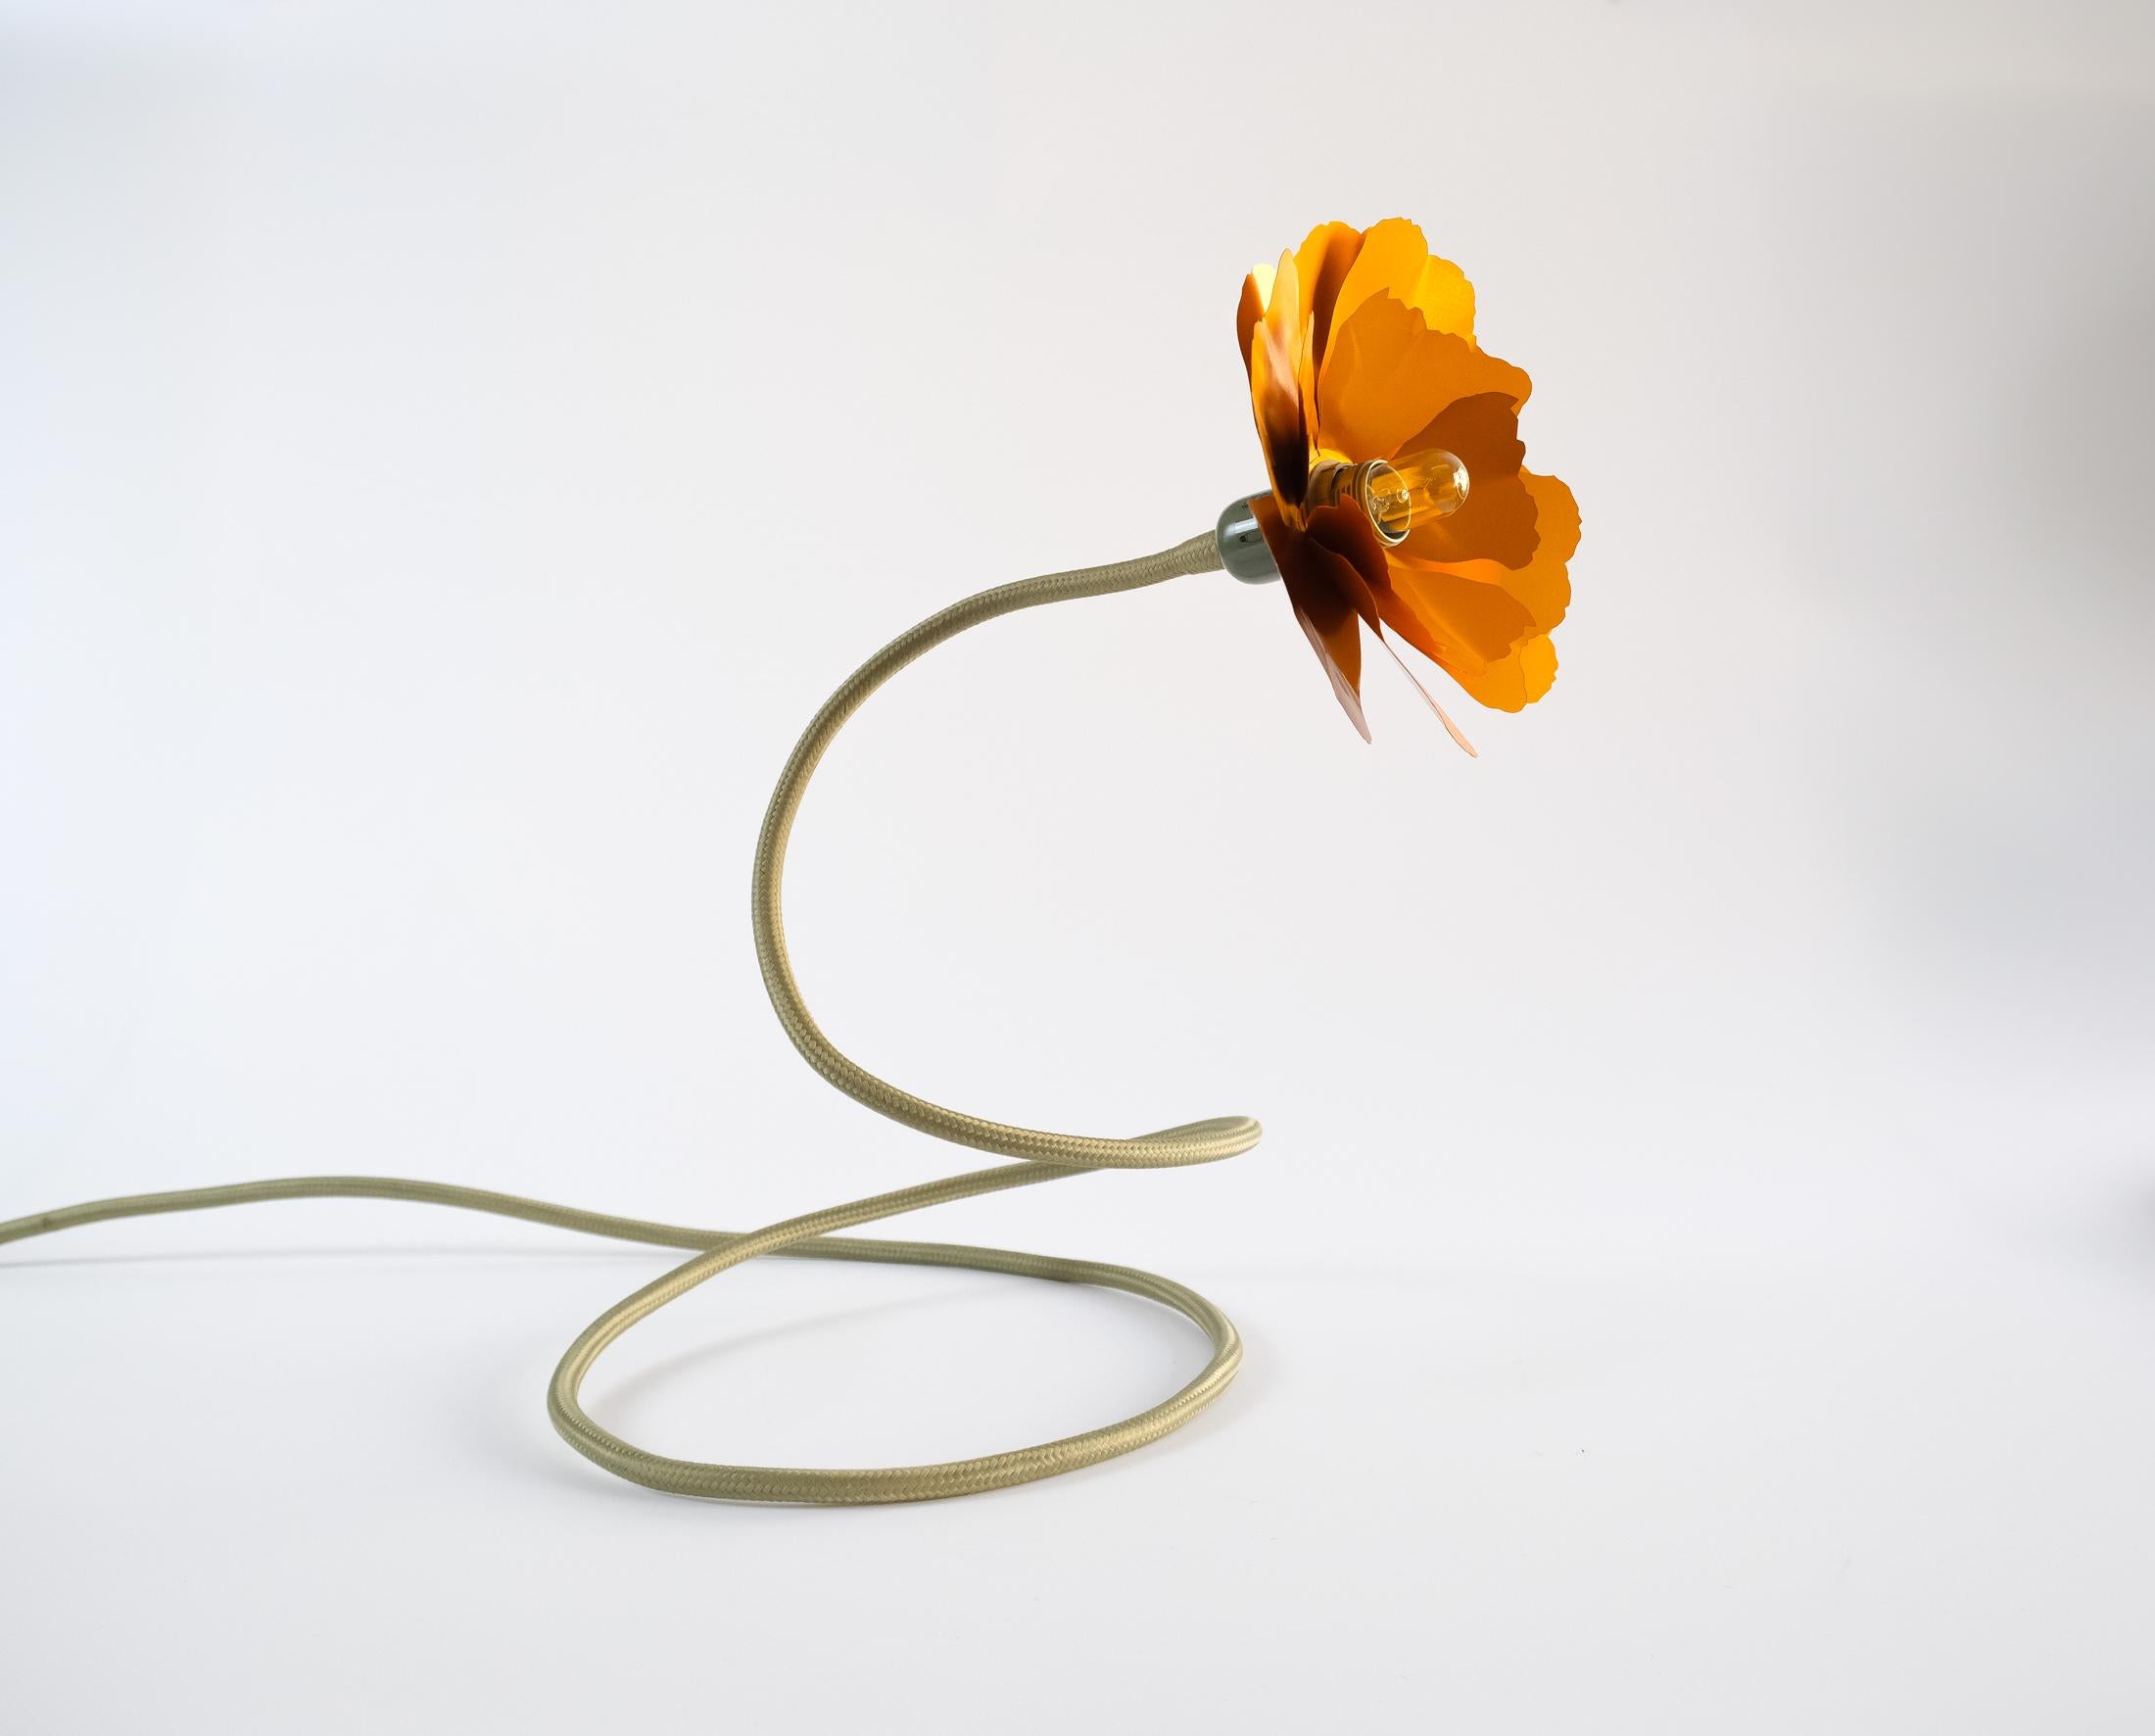 British Helena Christensen's Flexible Flower Lamp for Habitat “V.I.P” Collection, 2004 For Sale